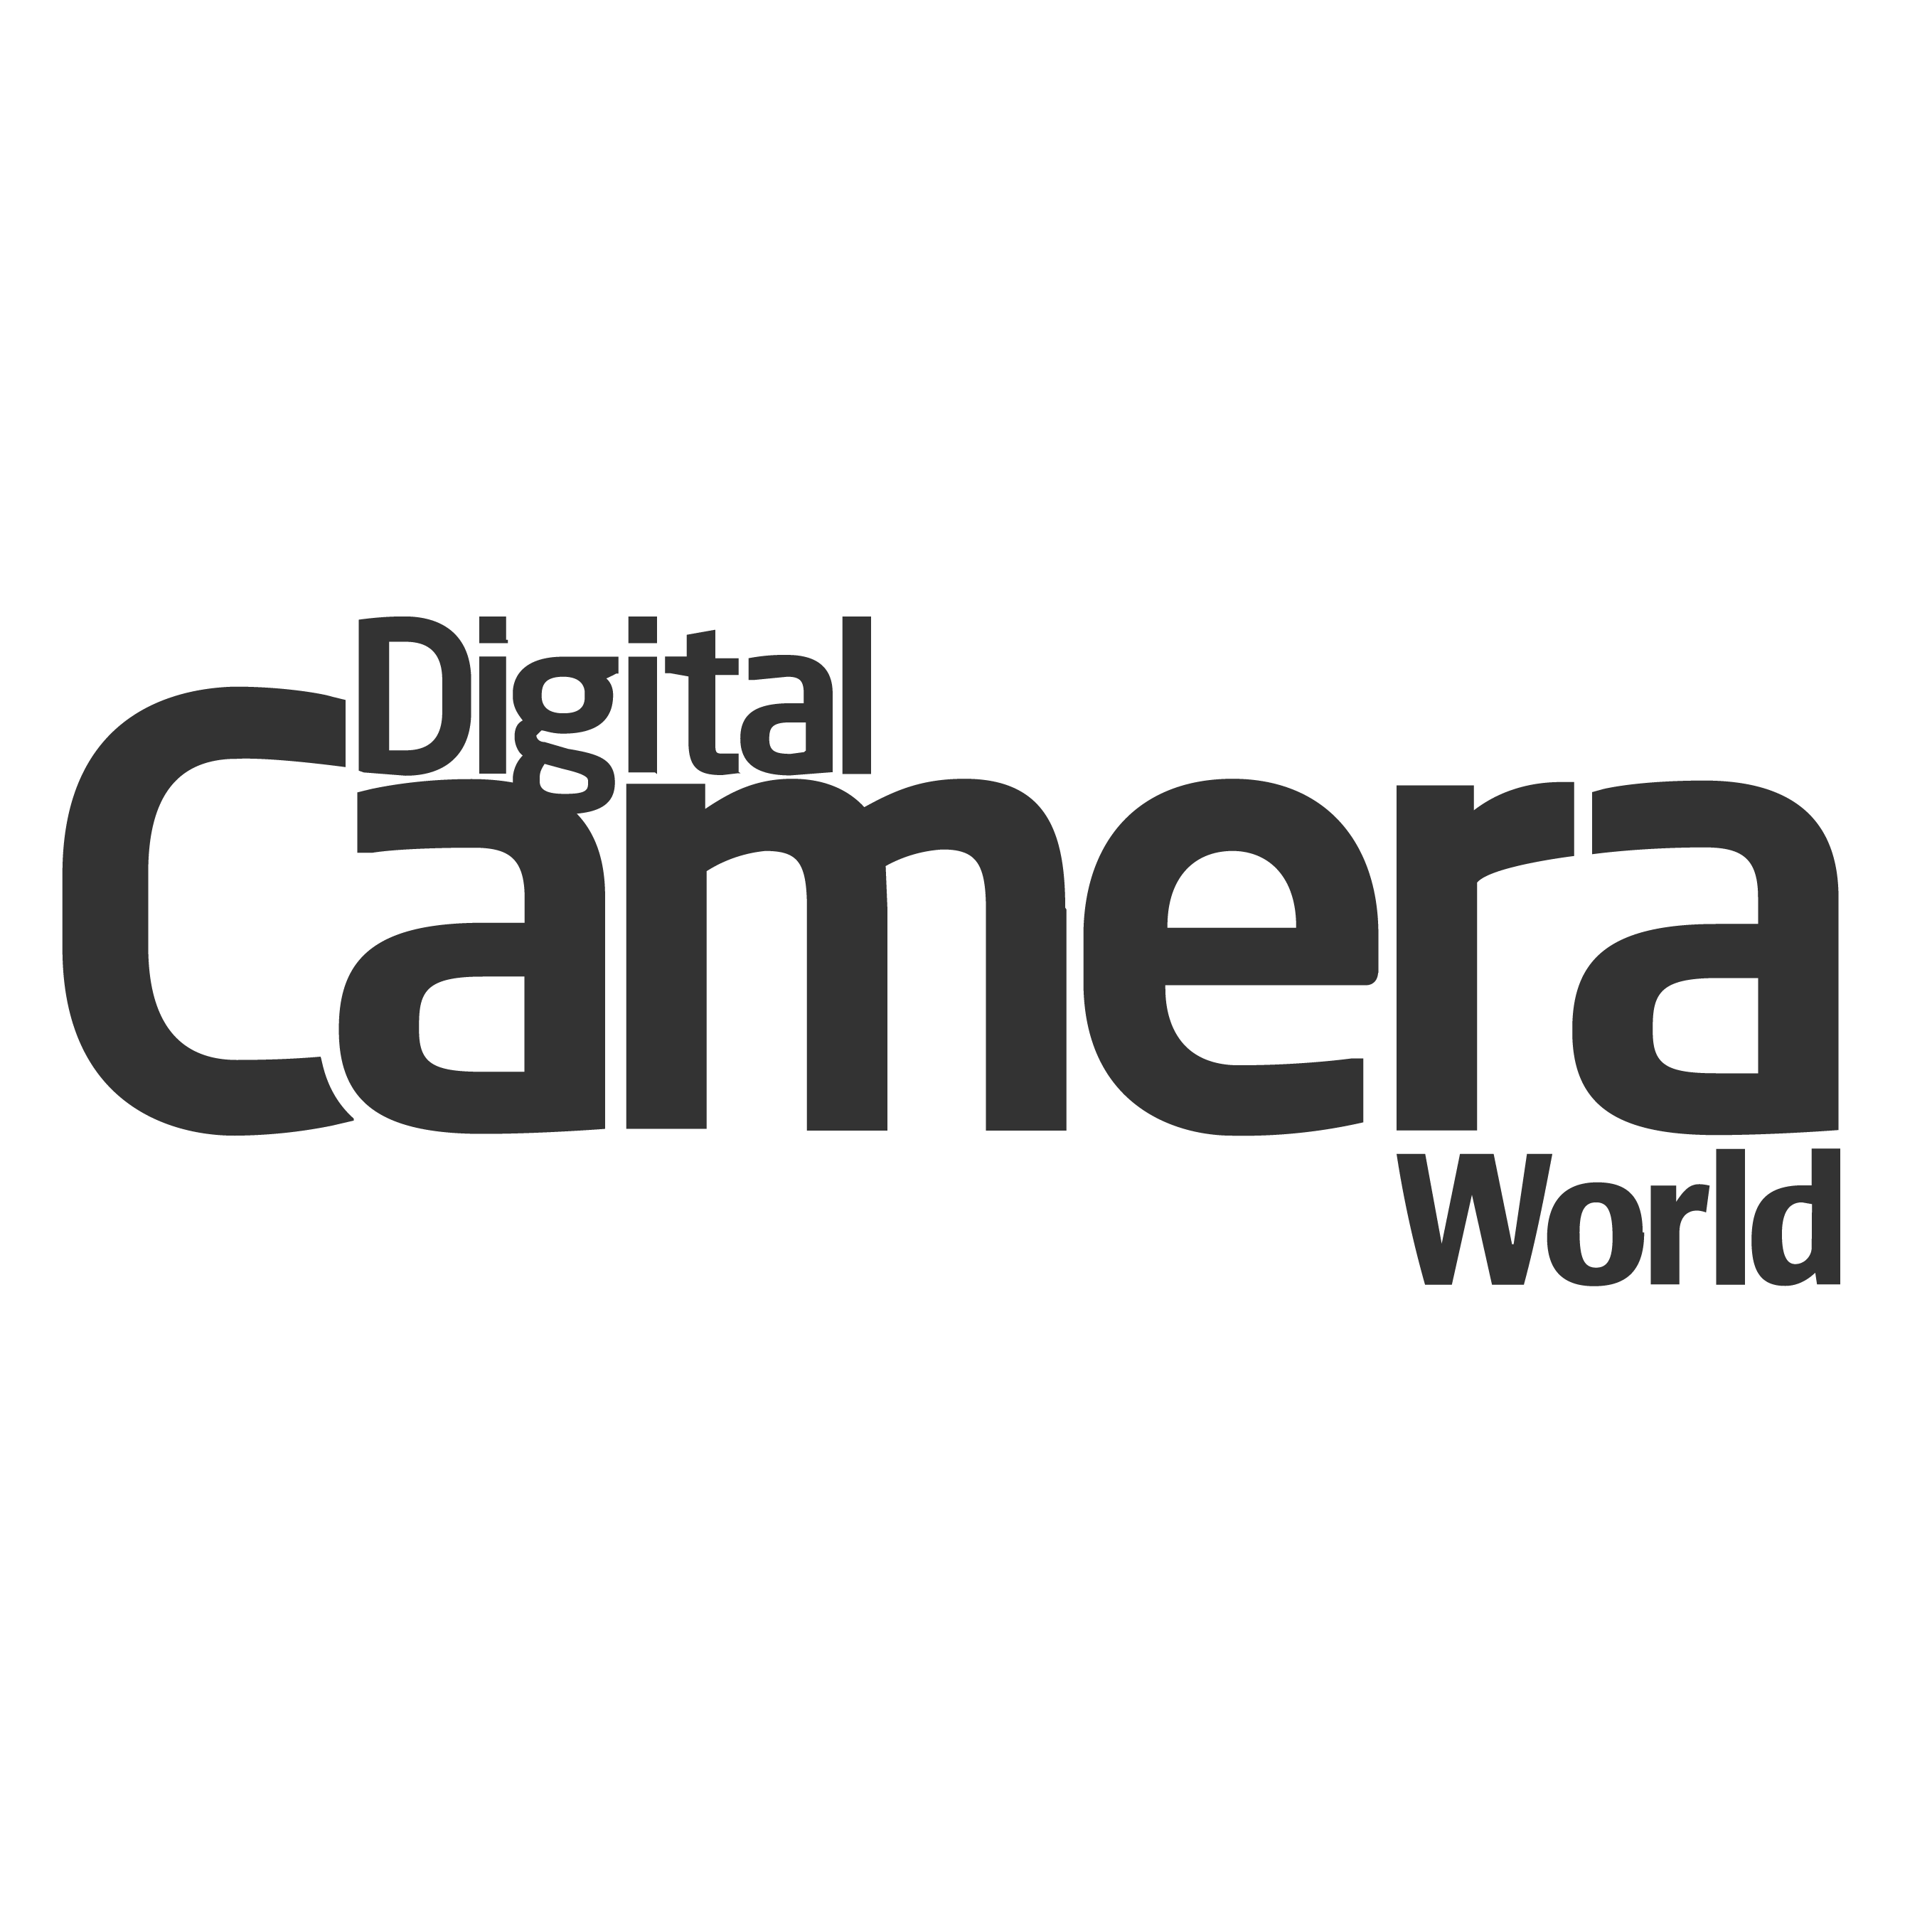 Digital Camera World